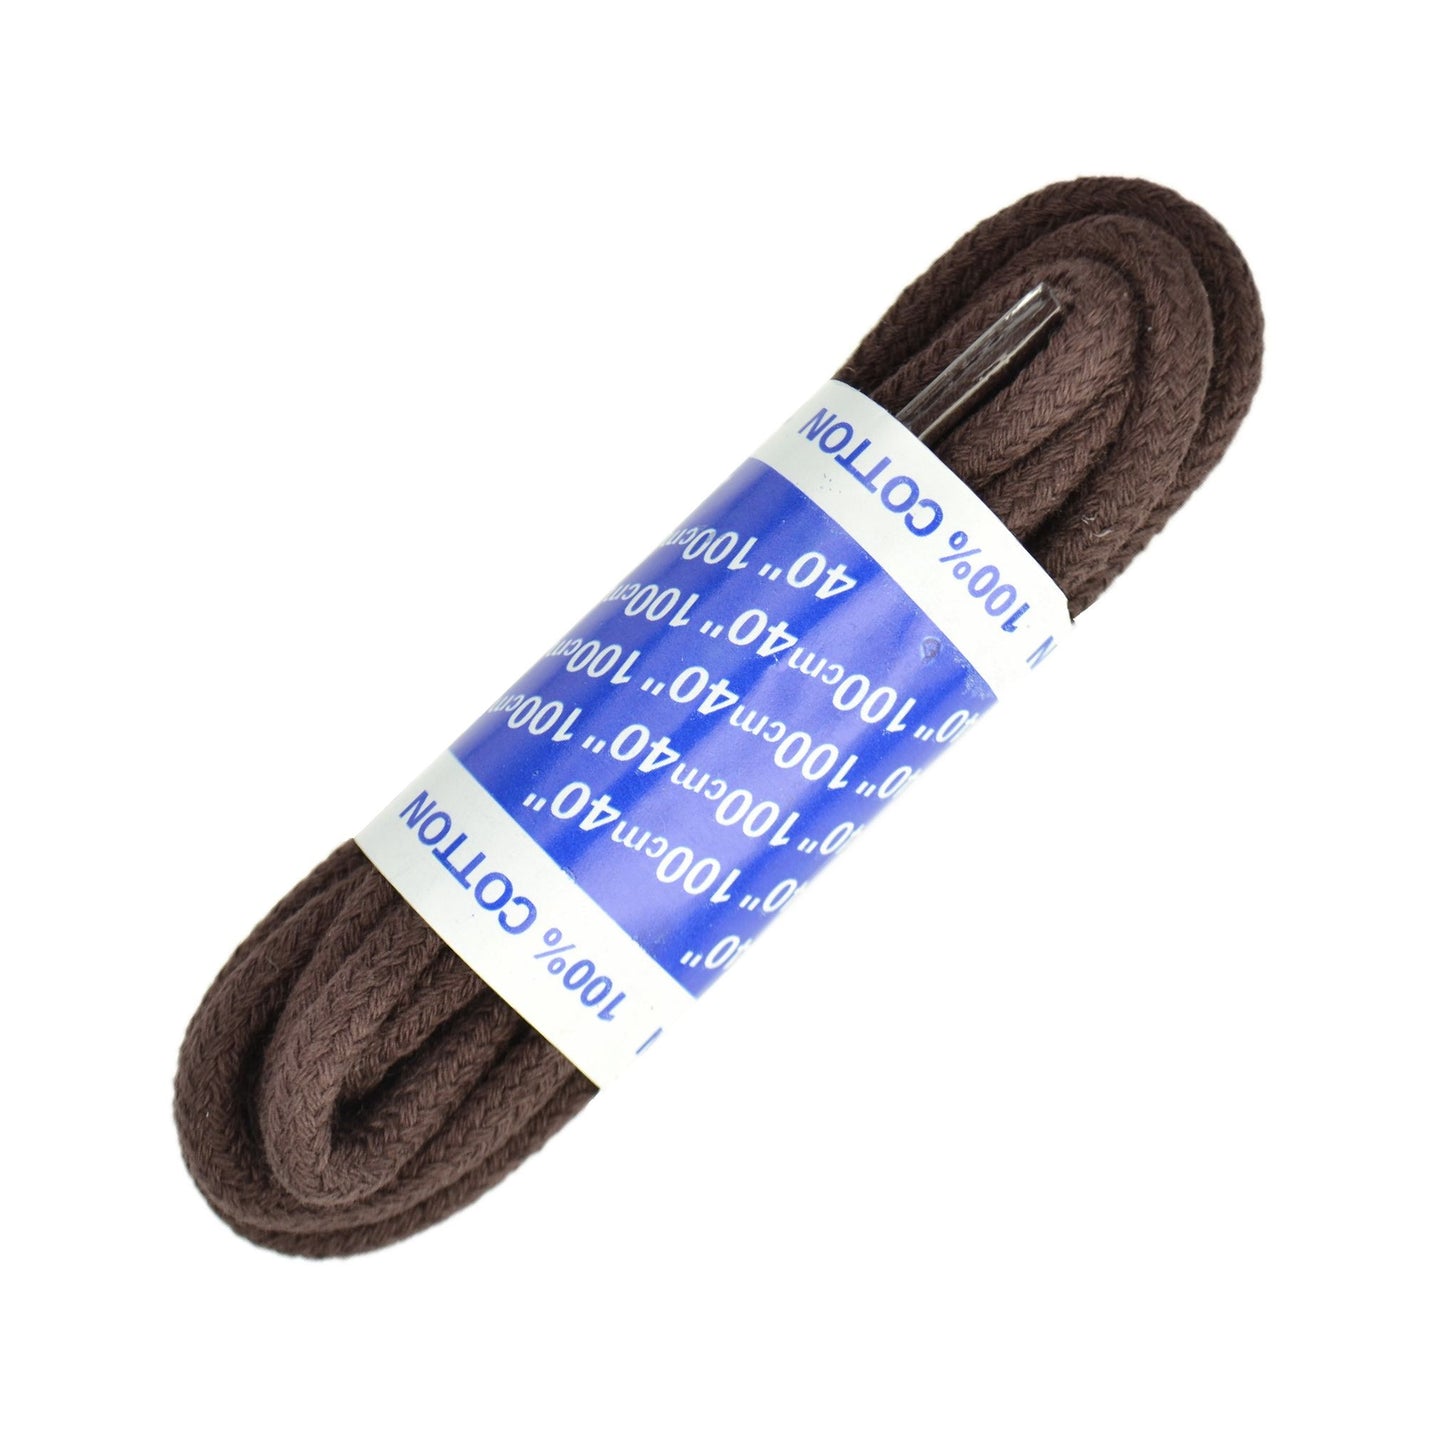 100cm Cord Shoe Laces - Brown 4mm cotton